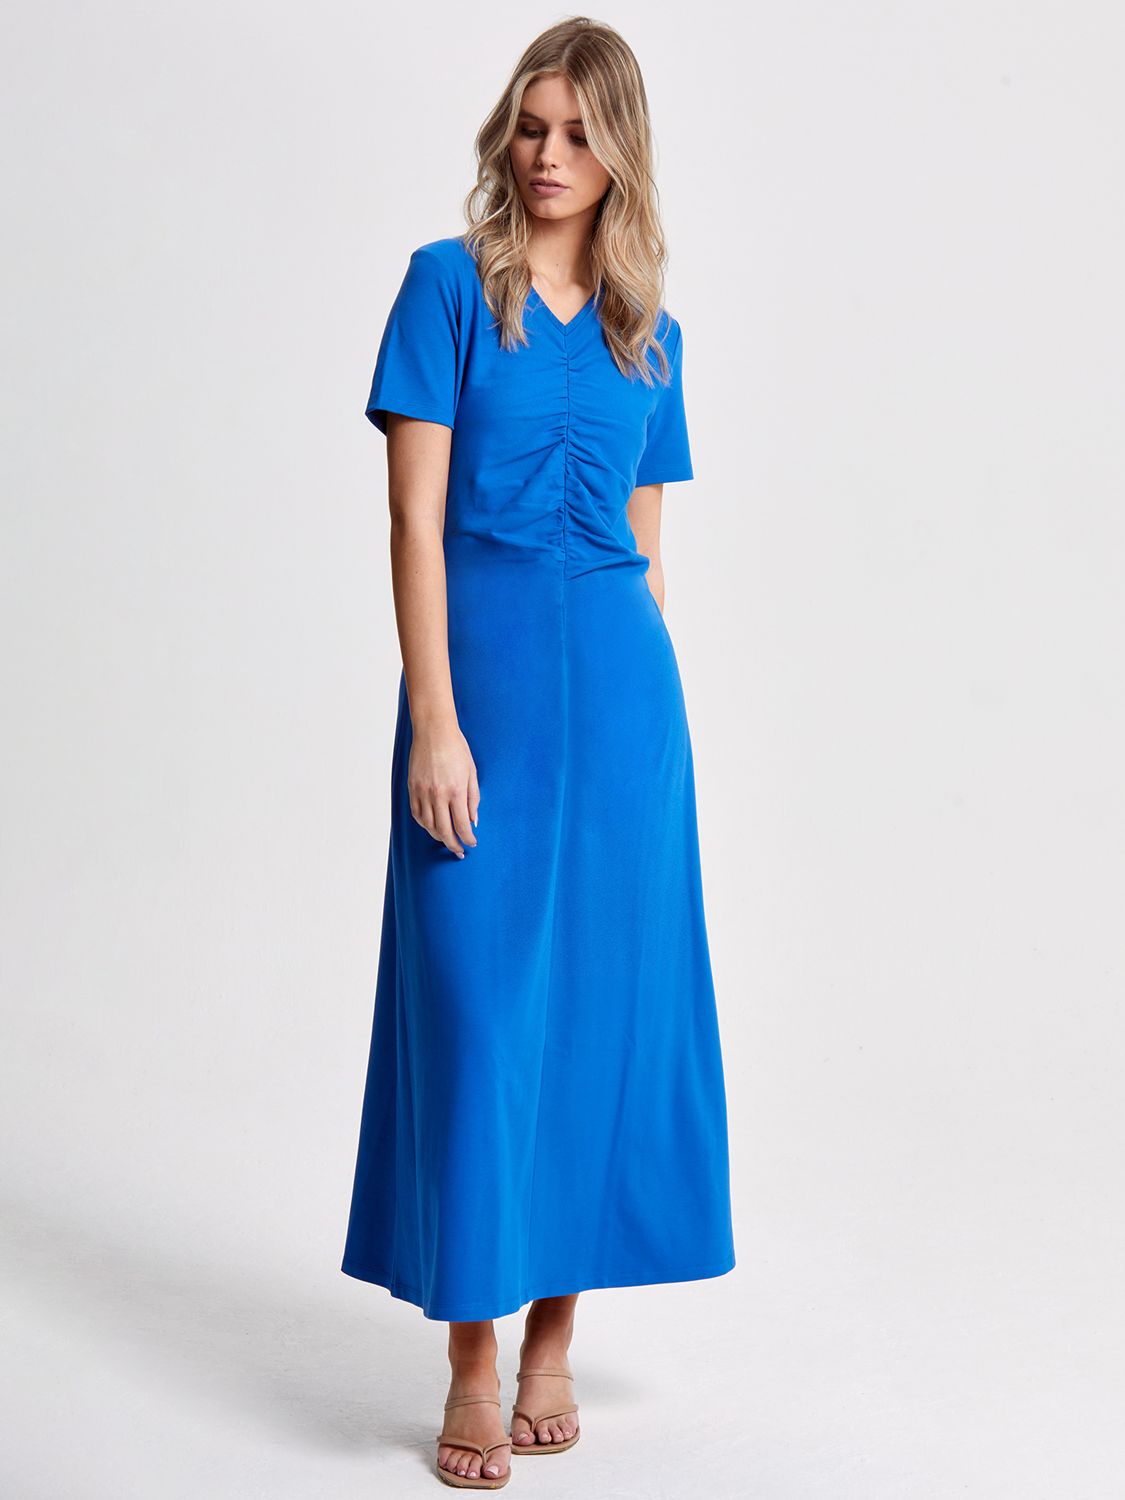 Helen McAlinden Finnley Ruched Jersey Dress, Cobalt Blue